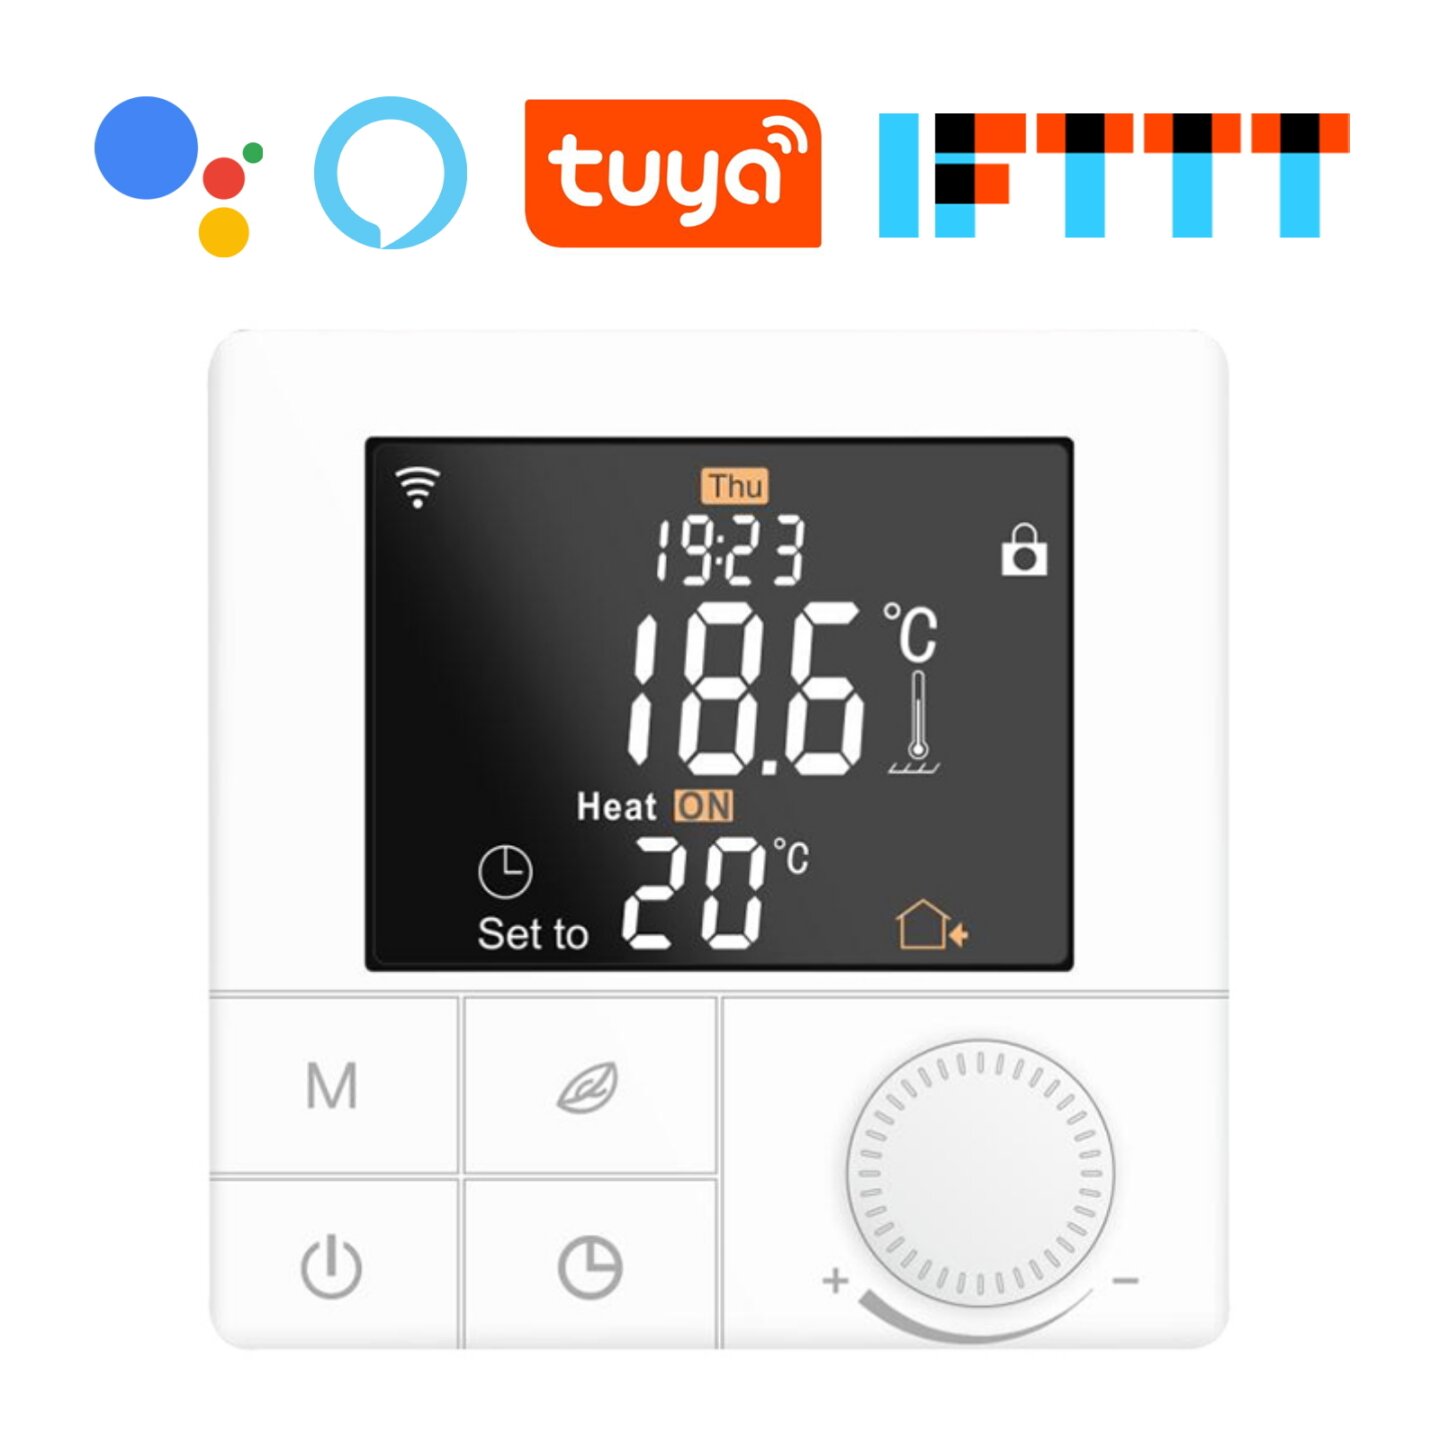 Smarte Thermostate lassen sich per Tuya Smart Smartphone oder Tablet App steuern